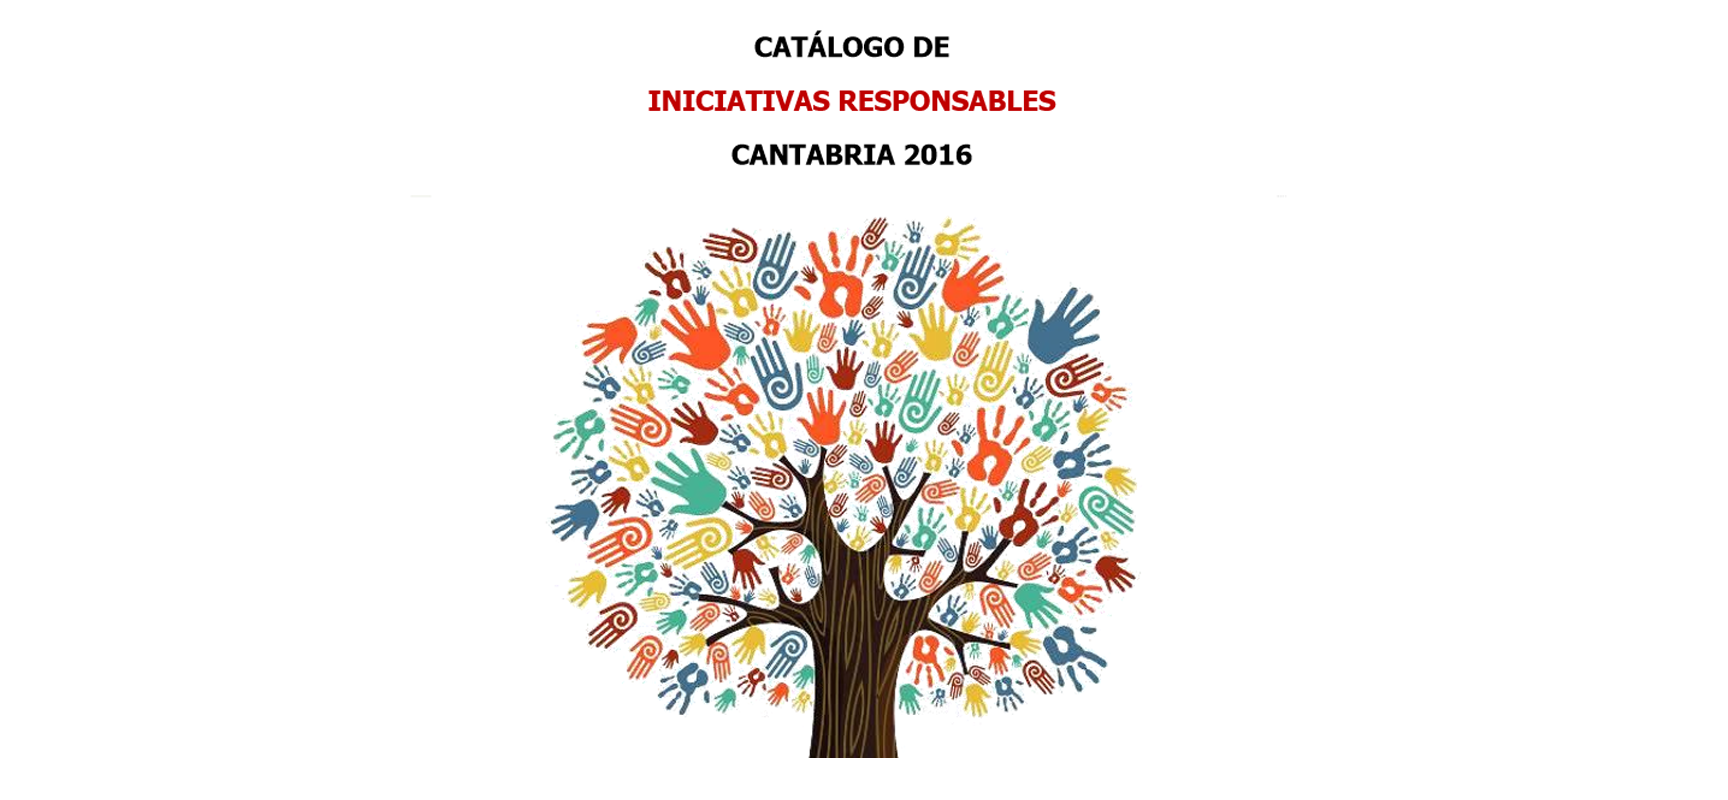 Iniciativas responsables de Cantabria